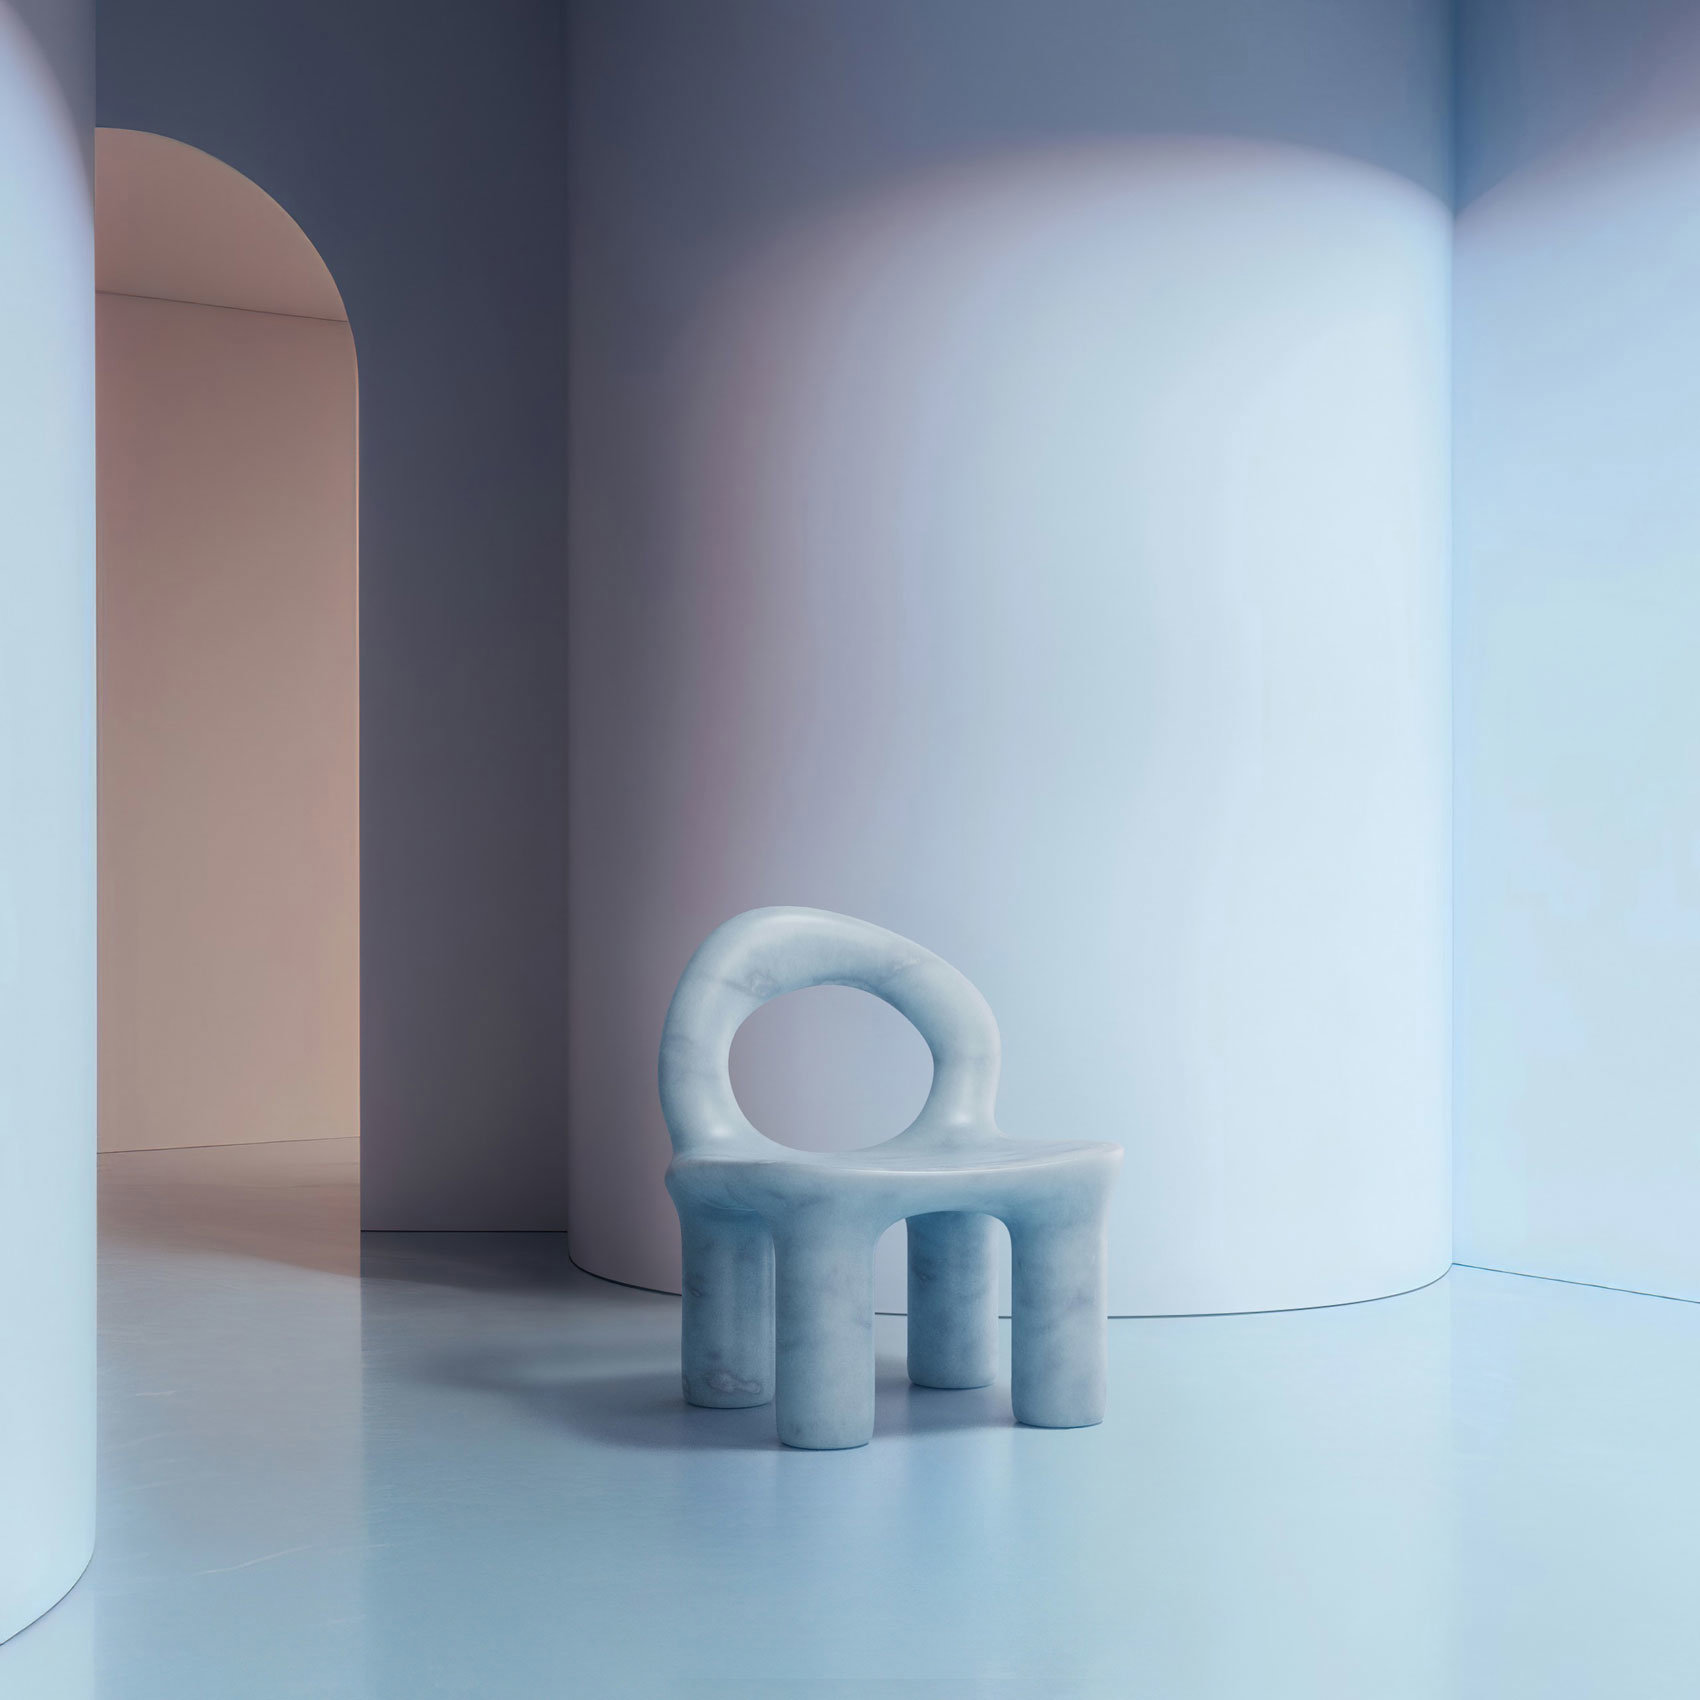 Origen es la silla creada por Six N. Five que combina formas orgánicas con una estética única y llamativa, manteniendo un enfoque minimalista pero escultórico.